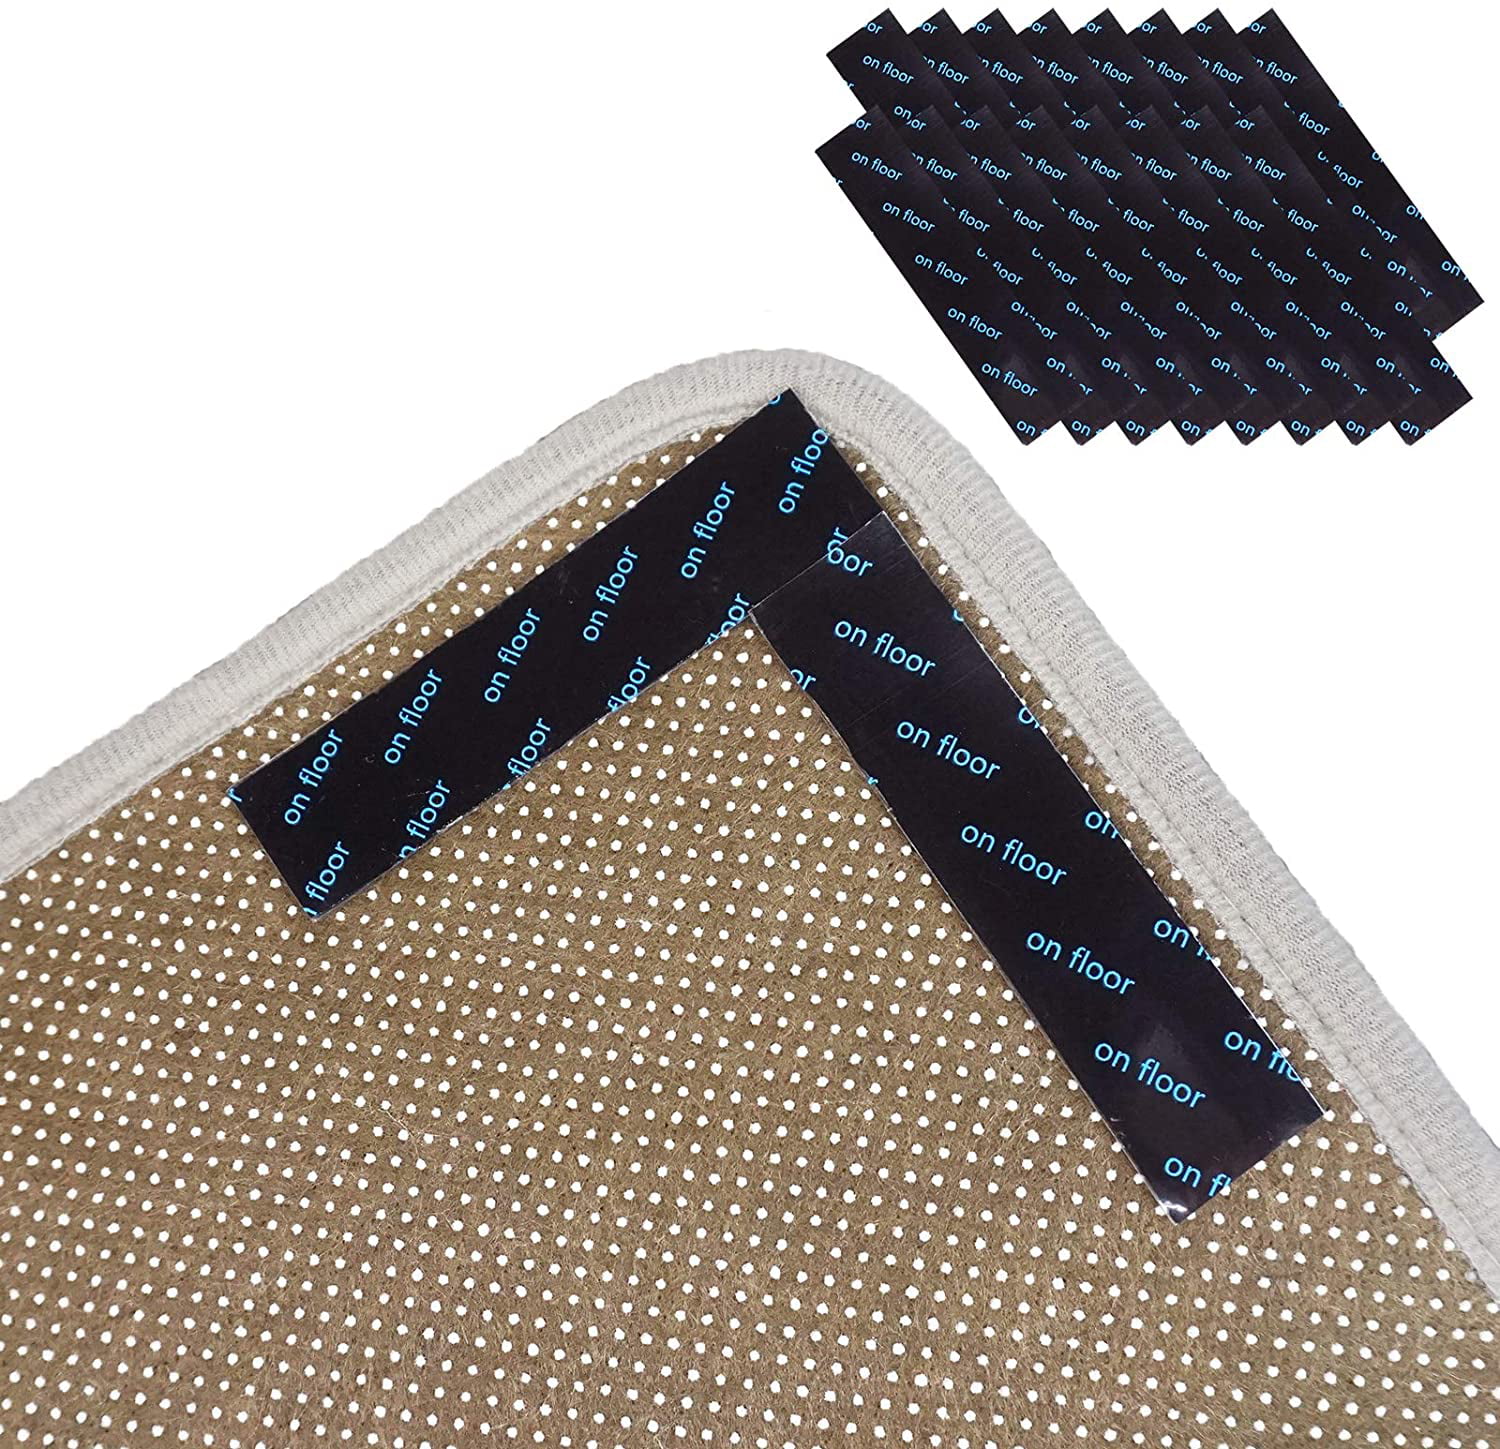 Non Slip Rug Gripper Sticky Anti Skid Rug Pads Tape 16PCS Removable Under  Carpet Grippers Sticker Holder Stopper for Area Rugs Runner Rug for  Hardwood Tiles Laminate Floors 